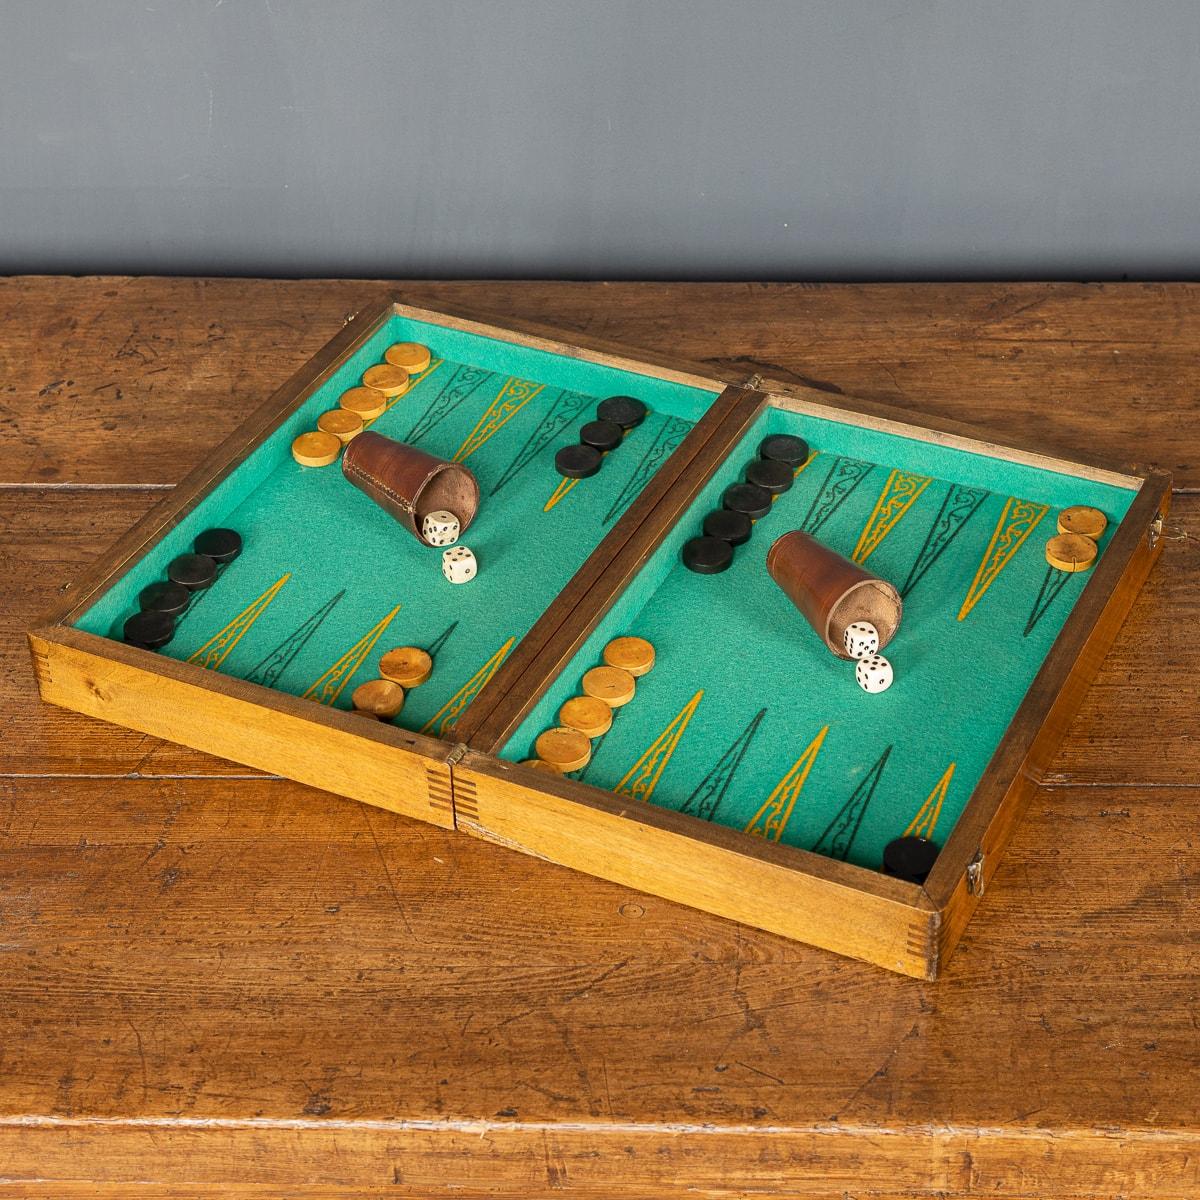 Britische Backgammon- und Damespielbox aus der Mitte des 20. Jahrhunderts. Ein großartiges Geschenk und ein Muss für die Festtage, das für viel Gesprächsstoff sorgt und ein großartiges Stück Geschichte ist, das an eine vergangene Ära